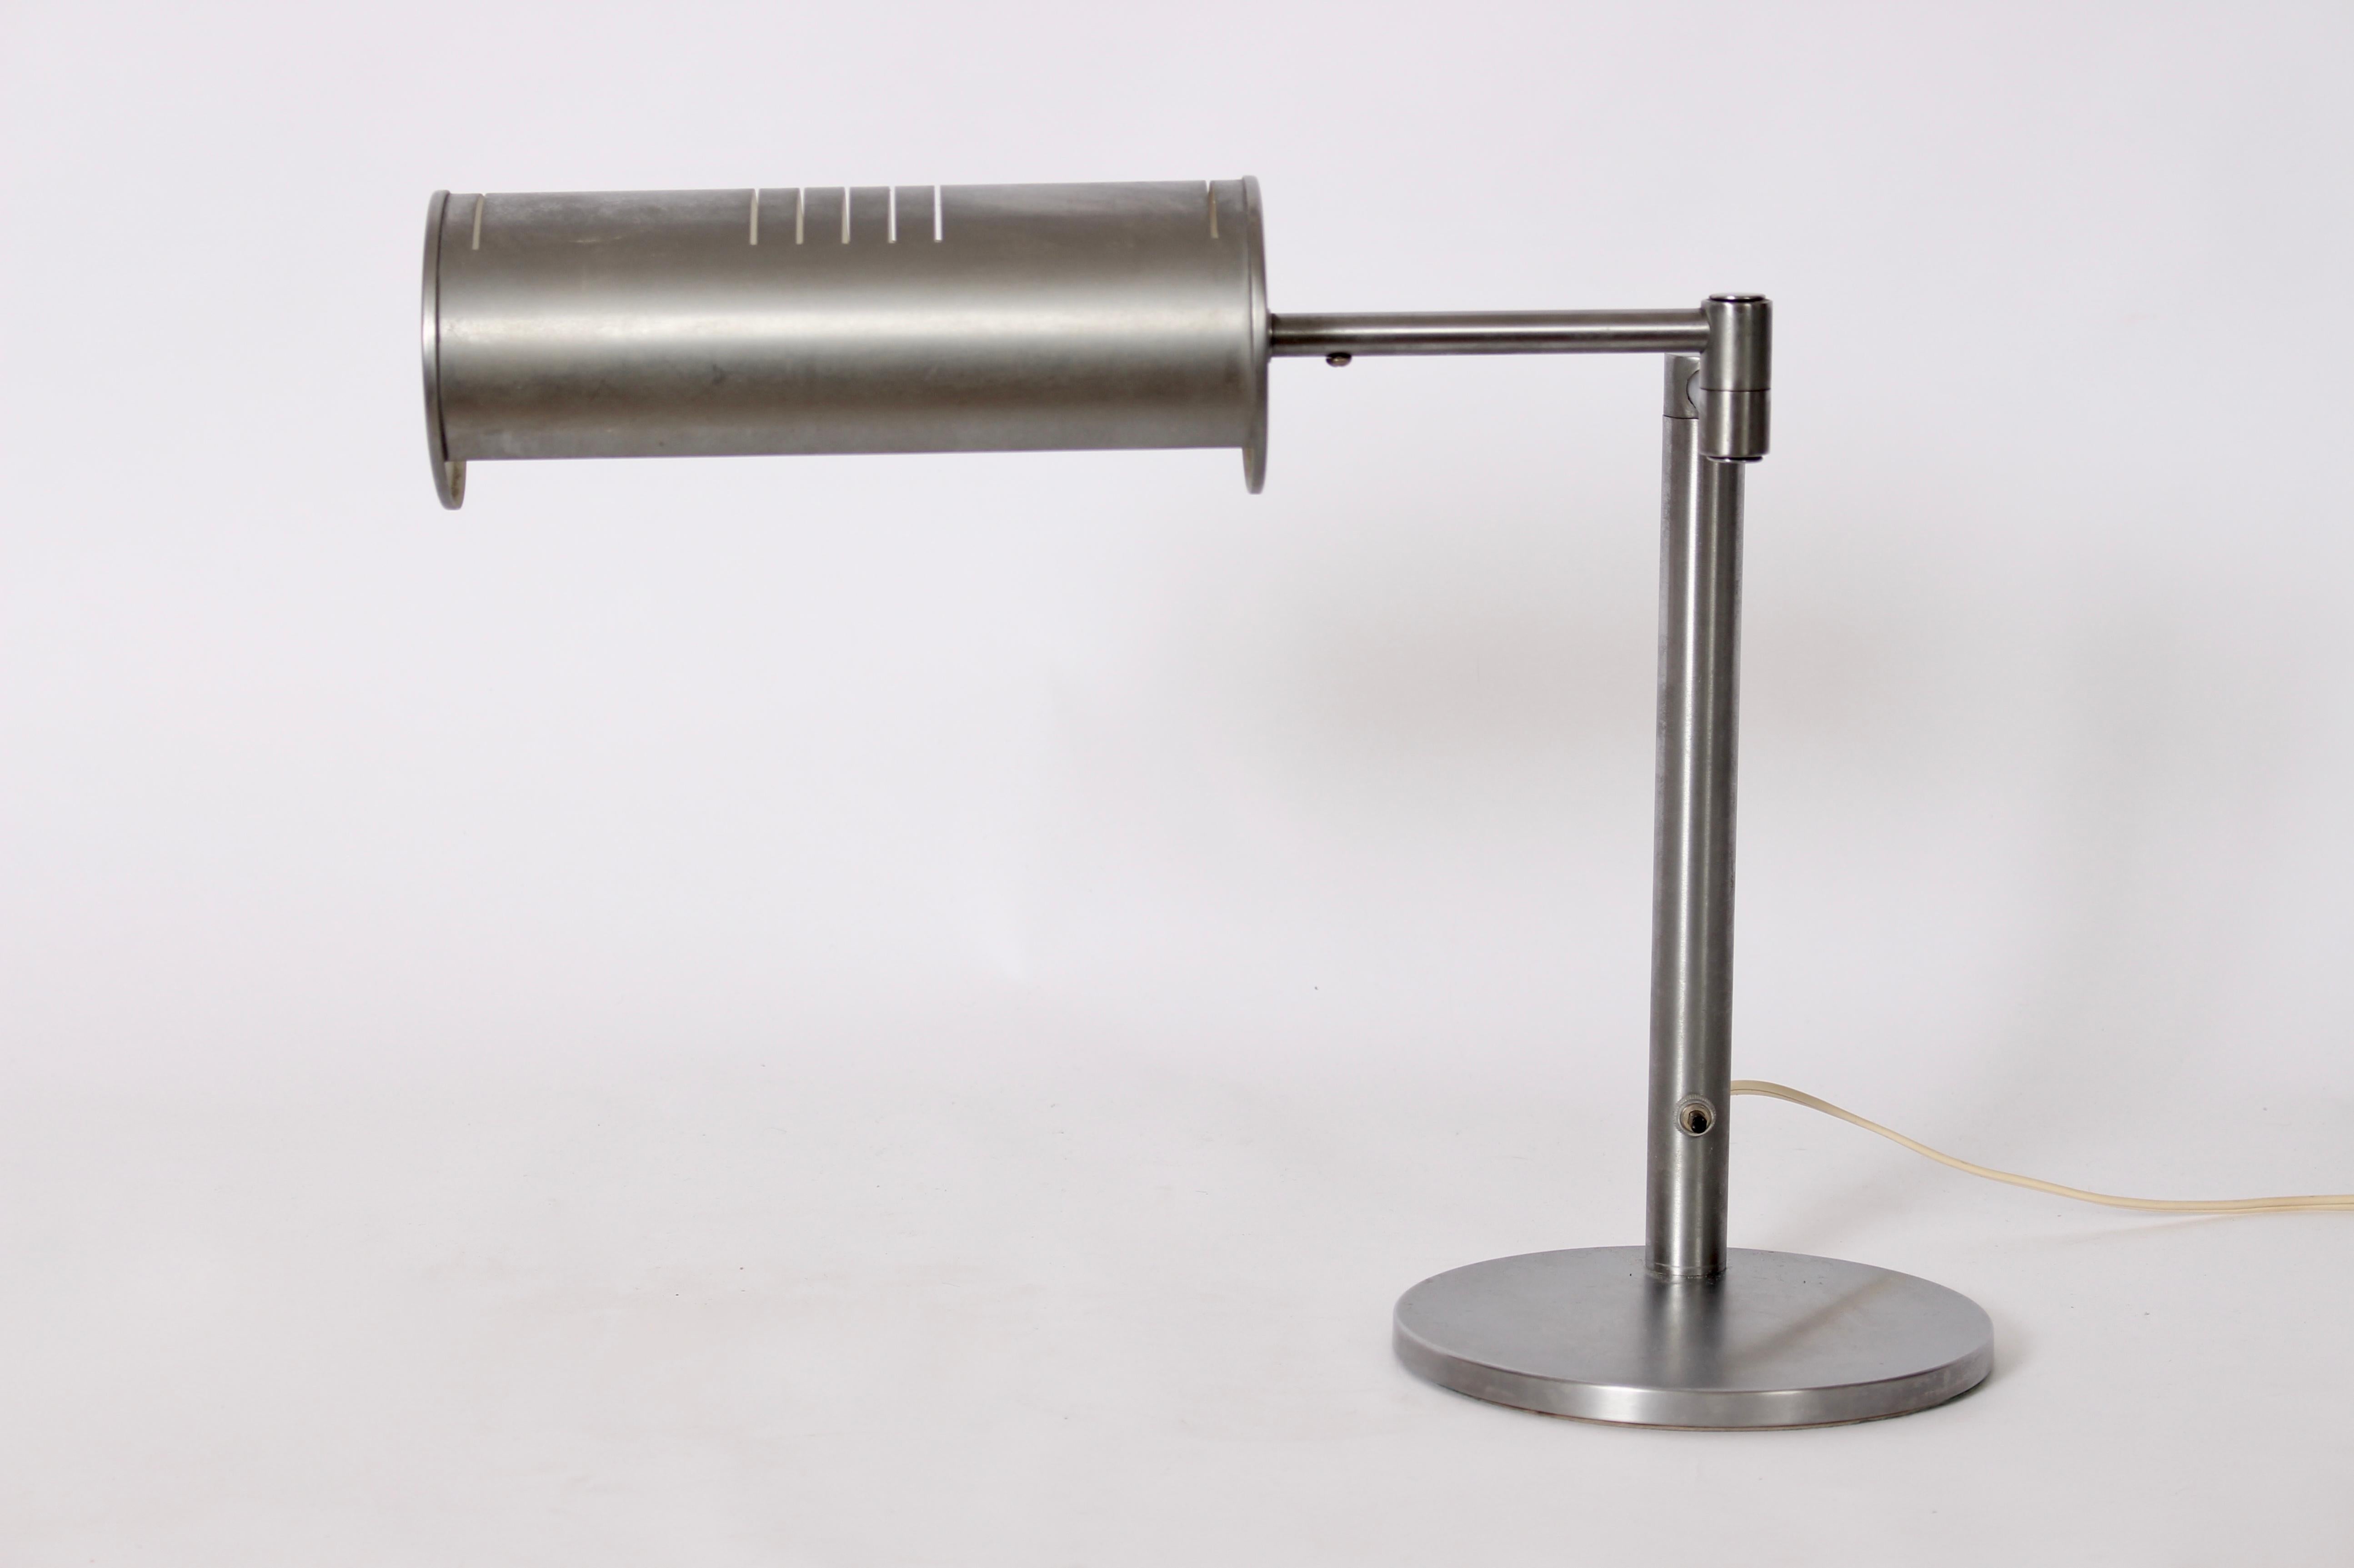 Lampe de bureau à bras articulé en acier brossé de Nessen Studios avec abat-jour cylindrique extensible et réglable. Ce design classique de Nessen, rarement vu en acier brossé, est doté d'un abat-jour pivotant perforé (s'étendant jusqu'à 15 L) et